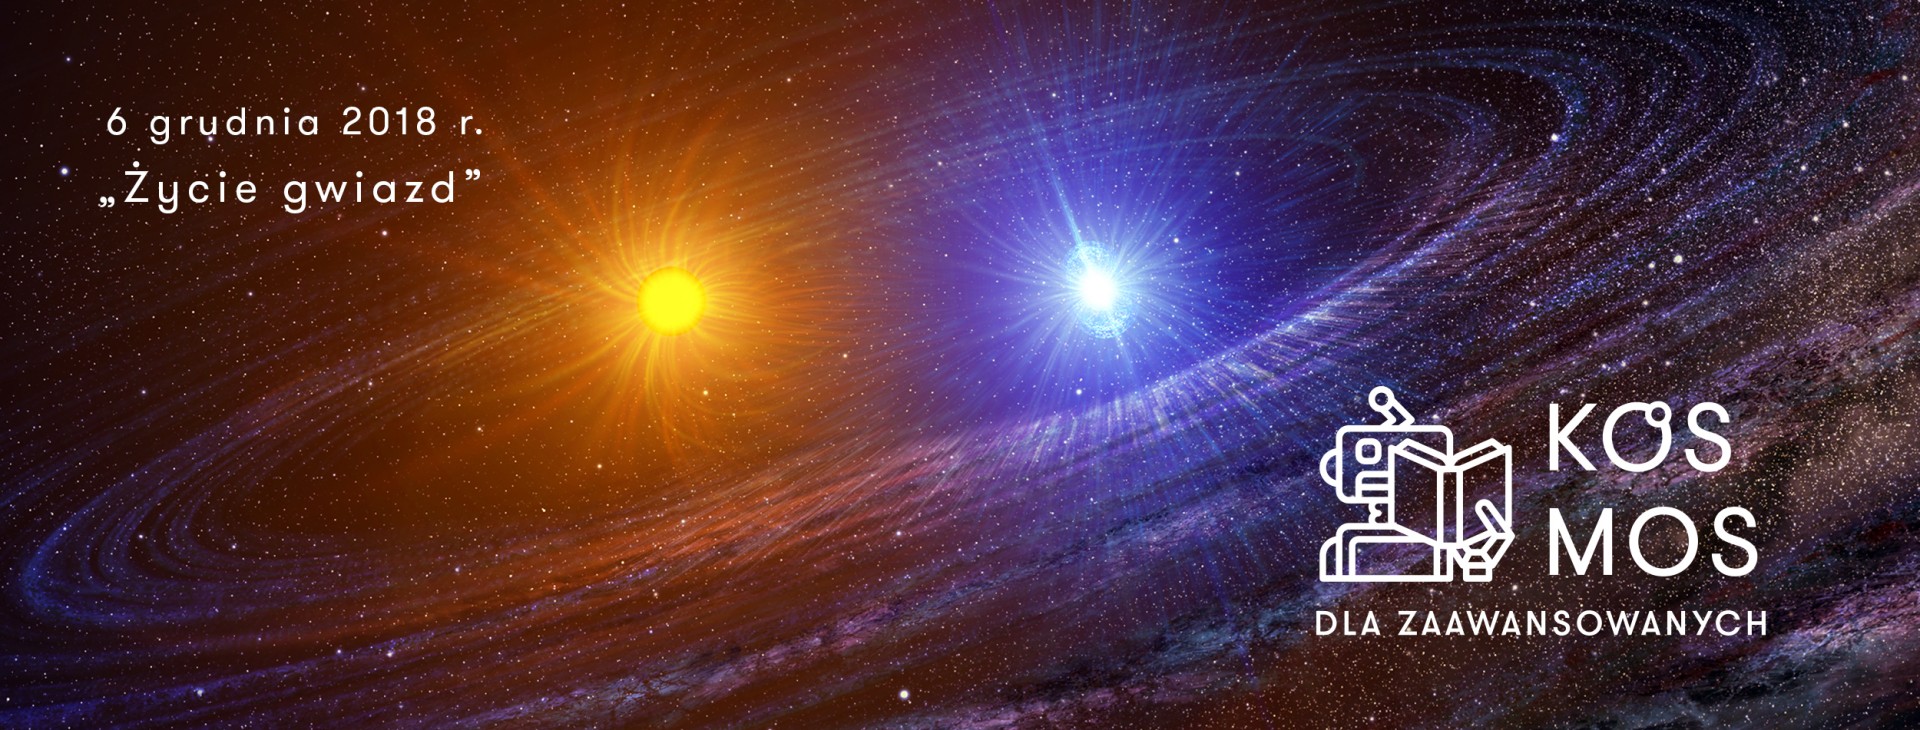 Życie gwiazd - pokaz Planetarium EC1 z cyklu "Kosmos dla zaawansowanych"